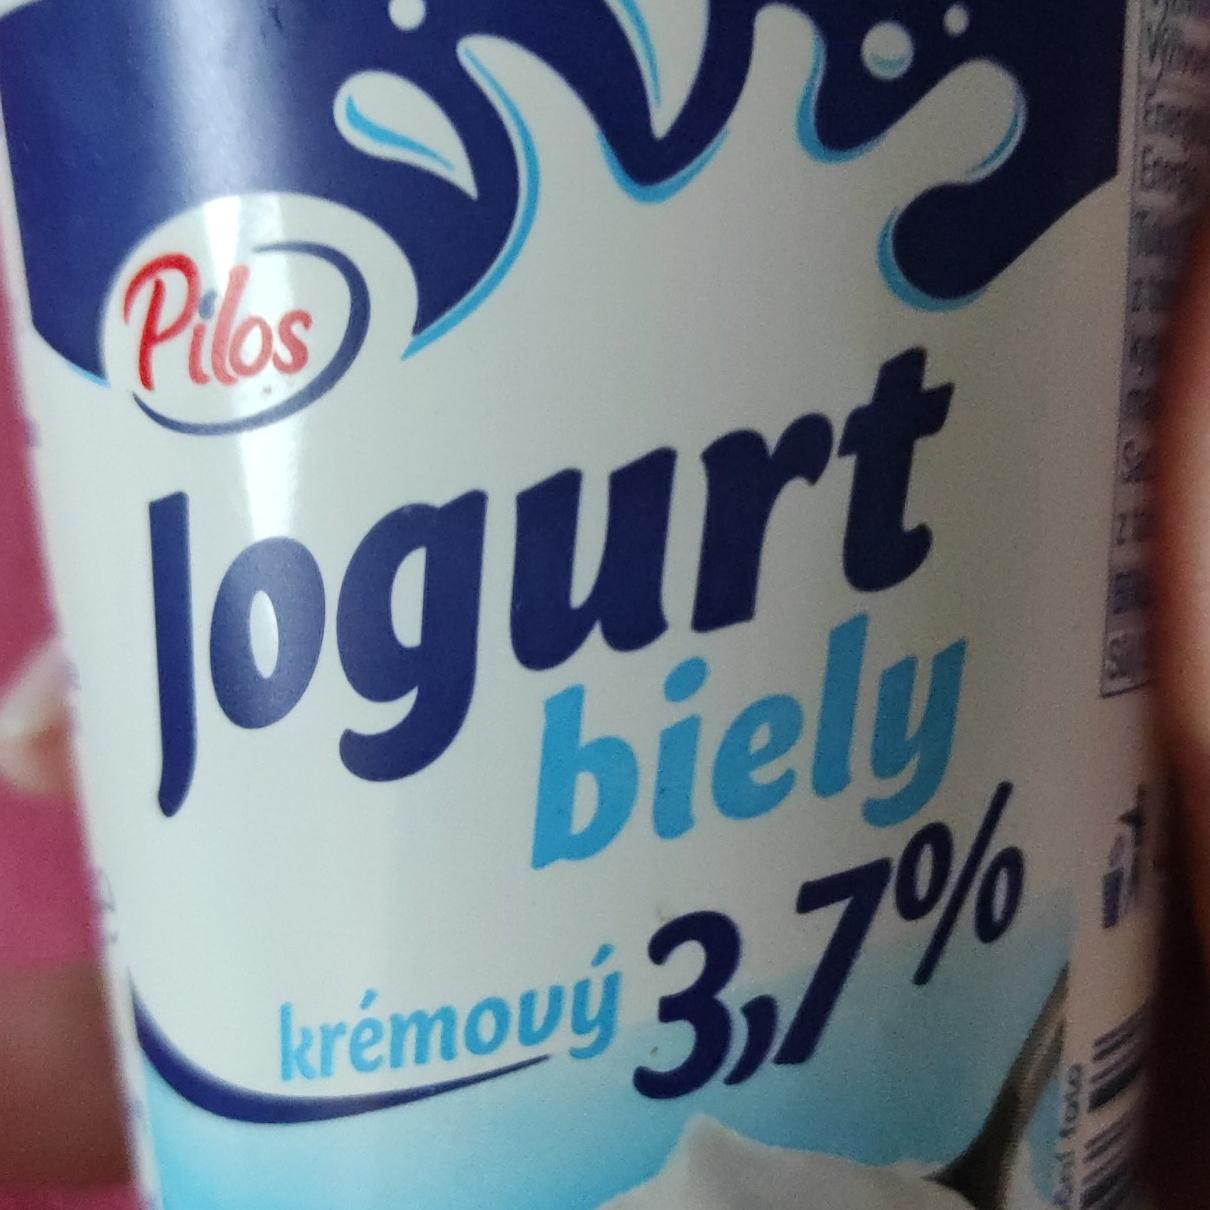 Фото - Йогурт белый кремовый 3.7% Pilos